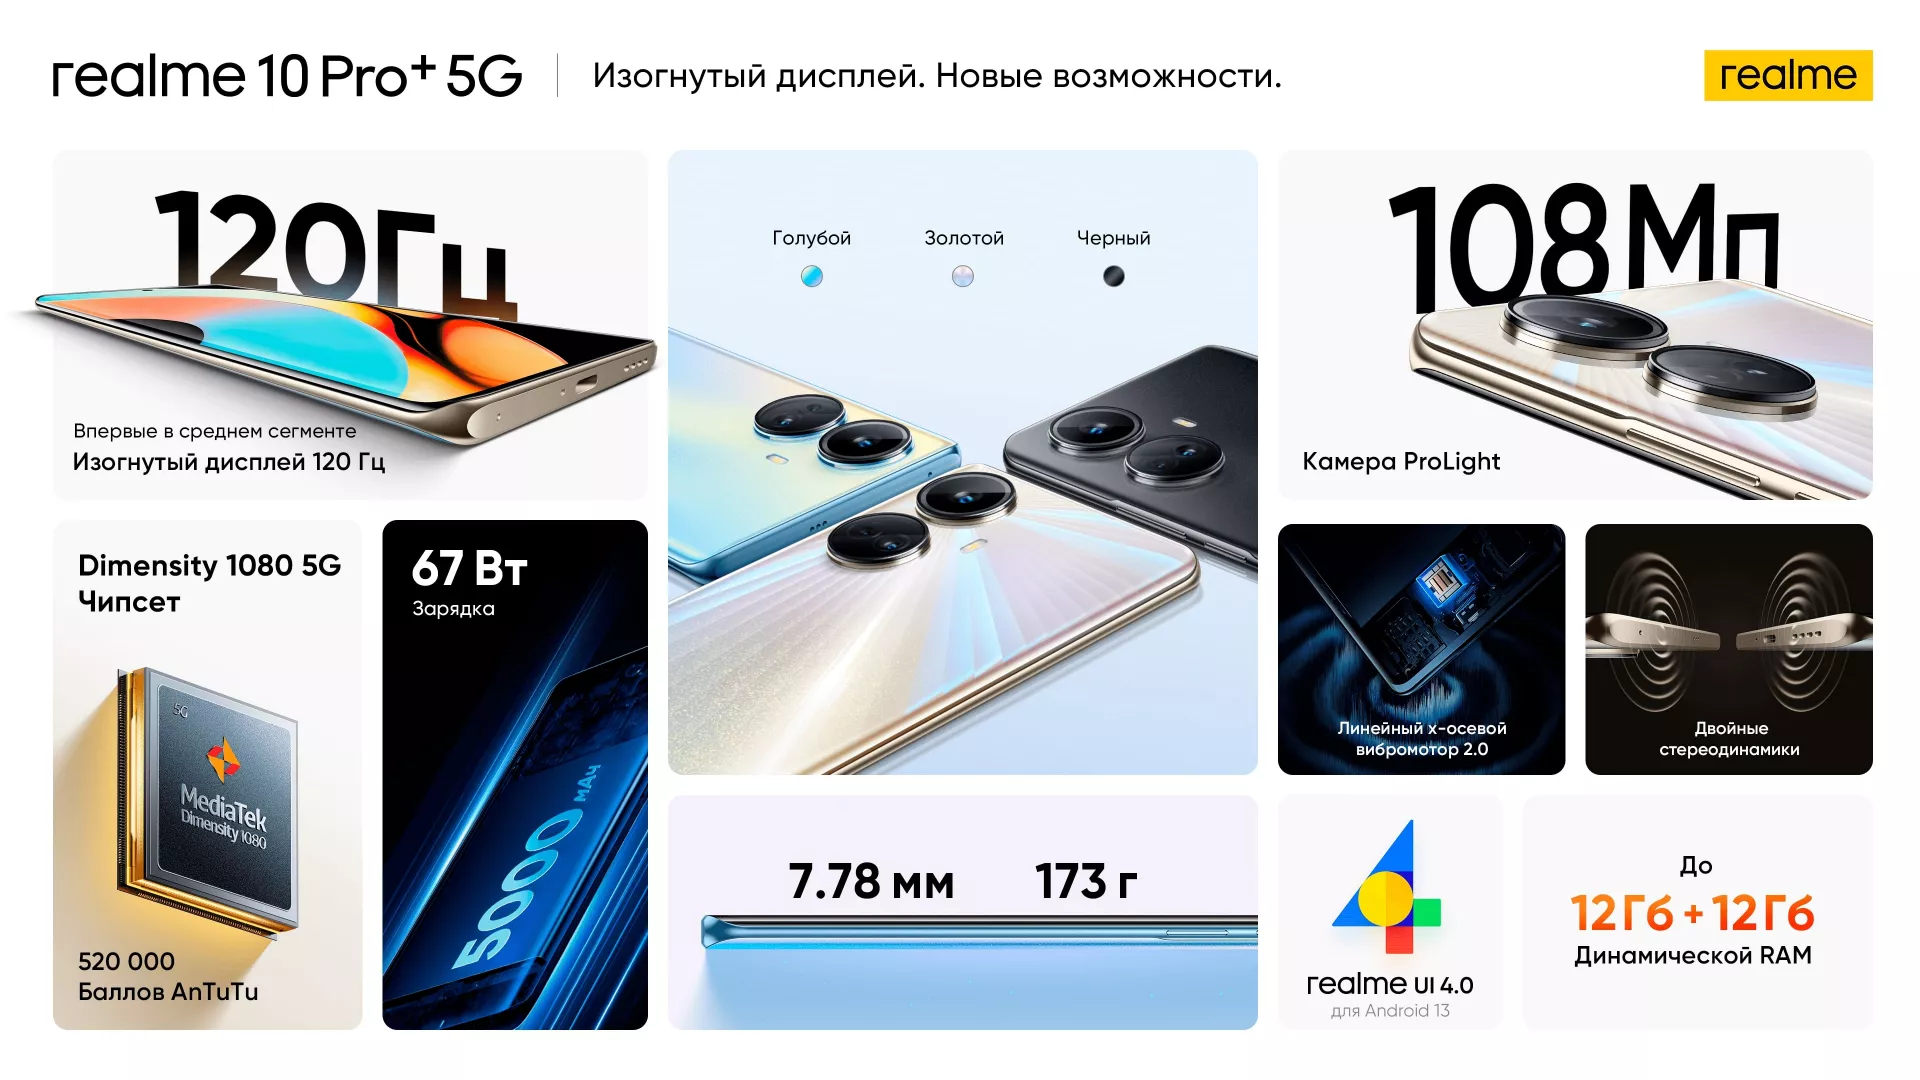 Смартфоны серии realme 10 Pro поступили в продажу в России